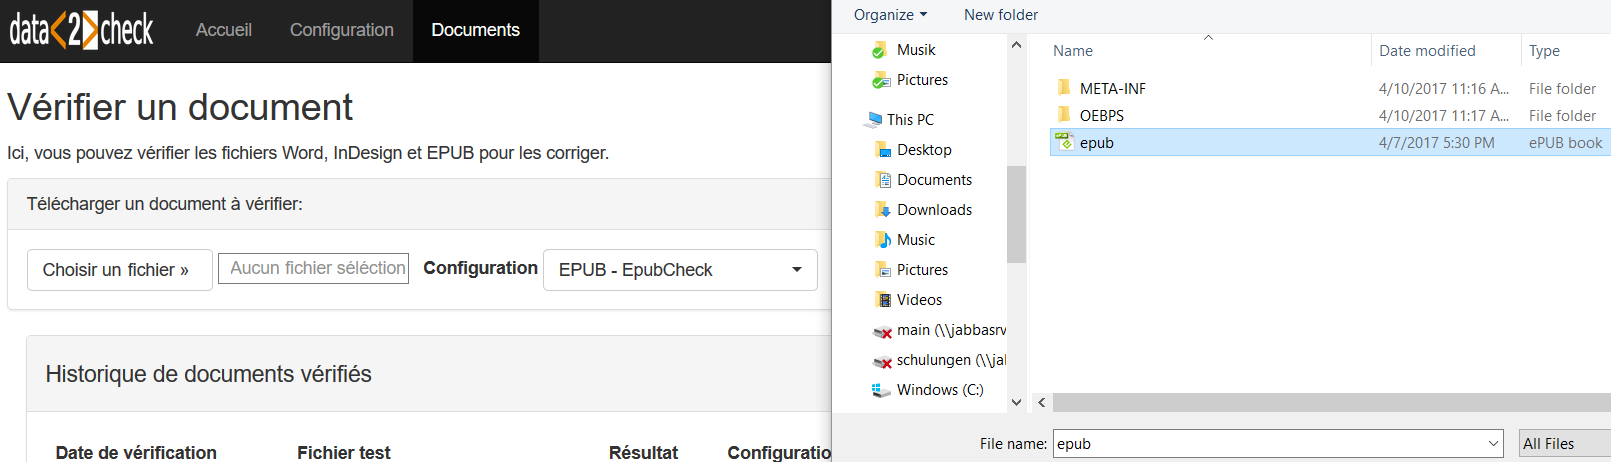 Téléchargement d'un document EPUB - Choisir un fichier .epub